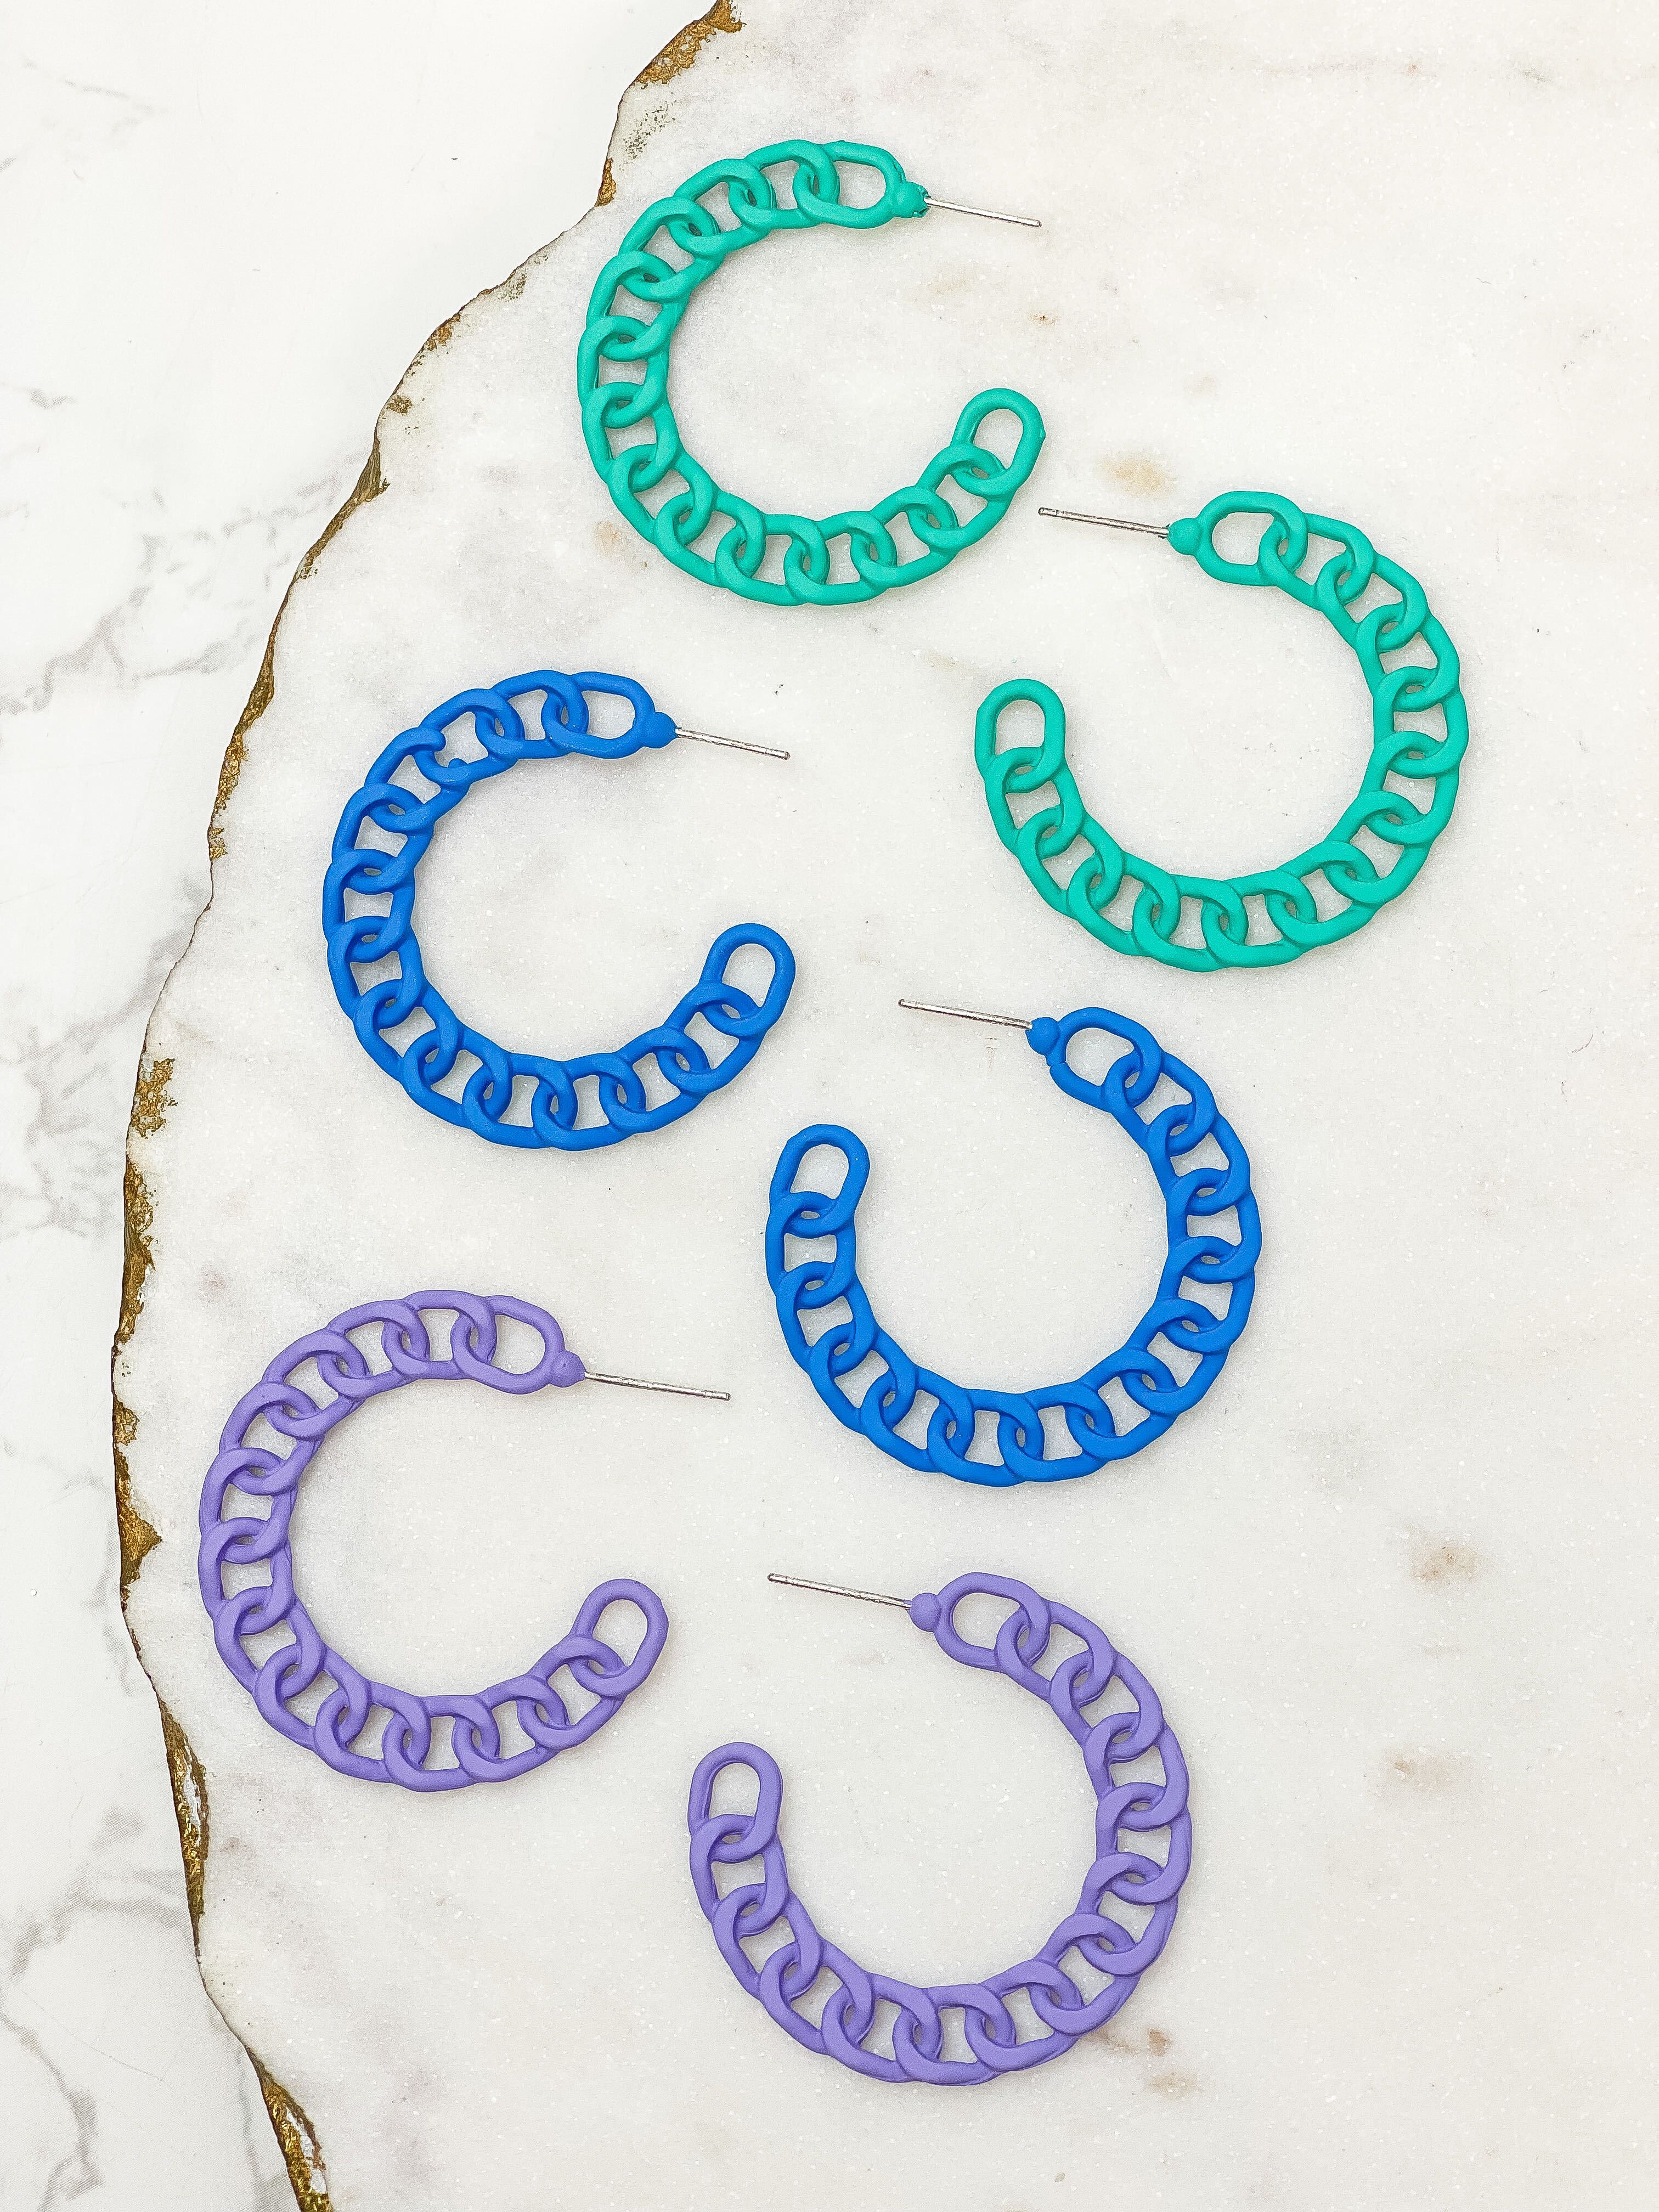 Painted Metal Chain Hoop Earrings - Blue